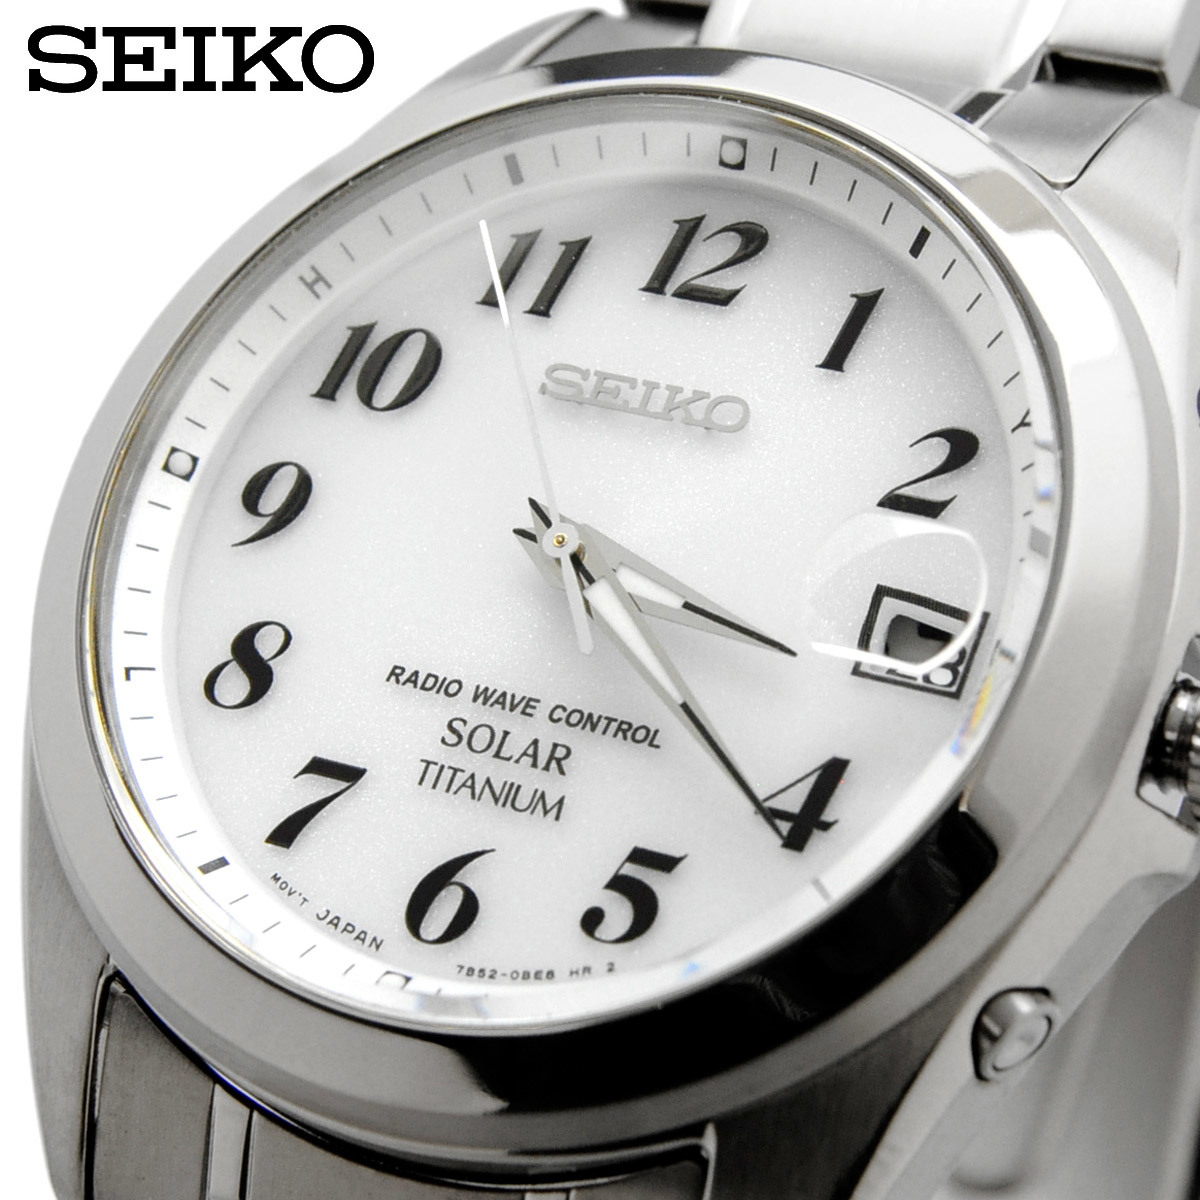 人気ショップ セイコー SEIKO 腕時計 SBTM223 国内正規品 スピリット SPIRIT ソーラー 電波時計 メンズ その他